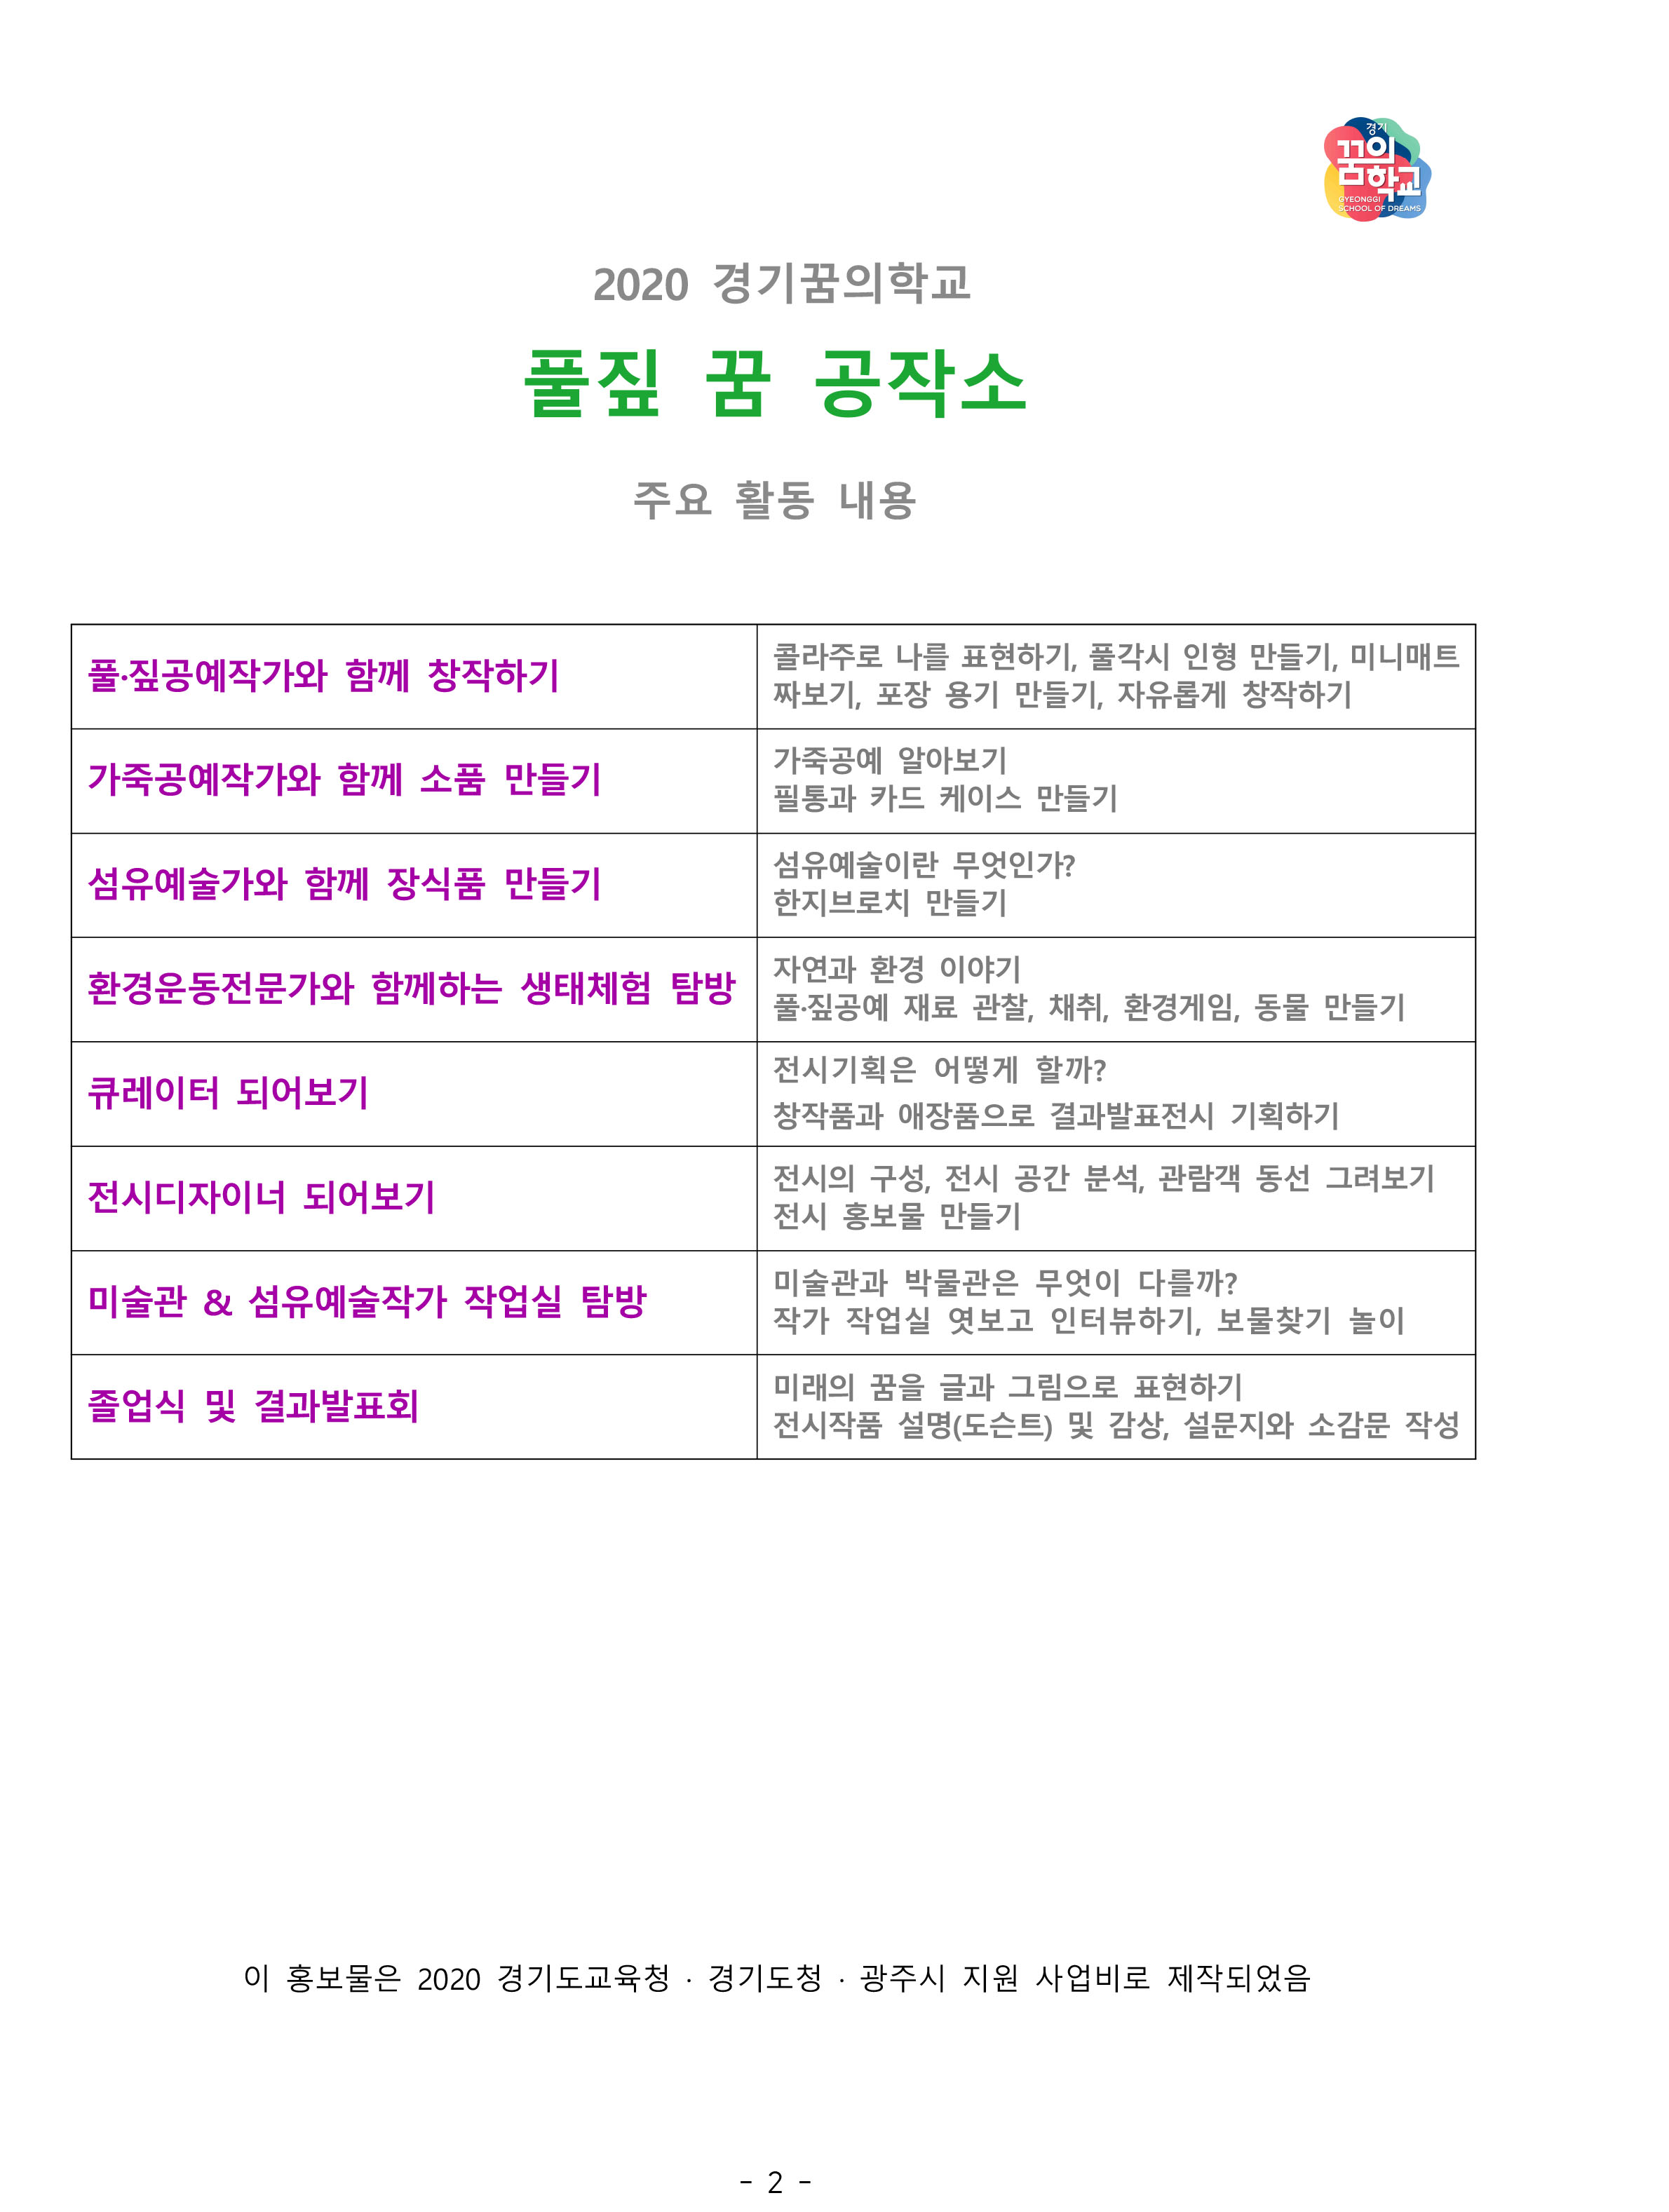 2020홍보리플렛-수정(무료 삭제)-2.jpg